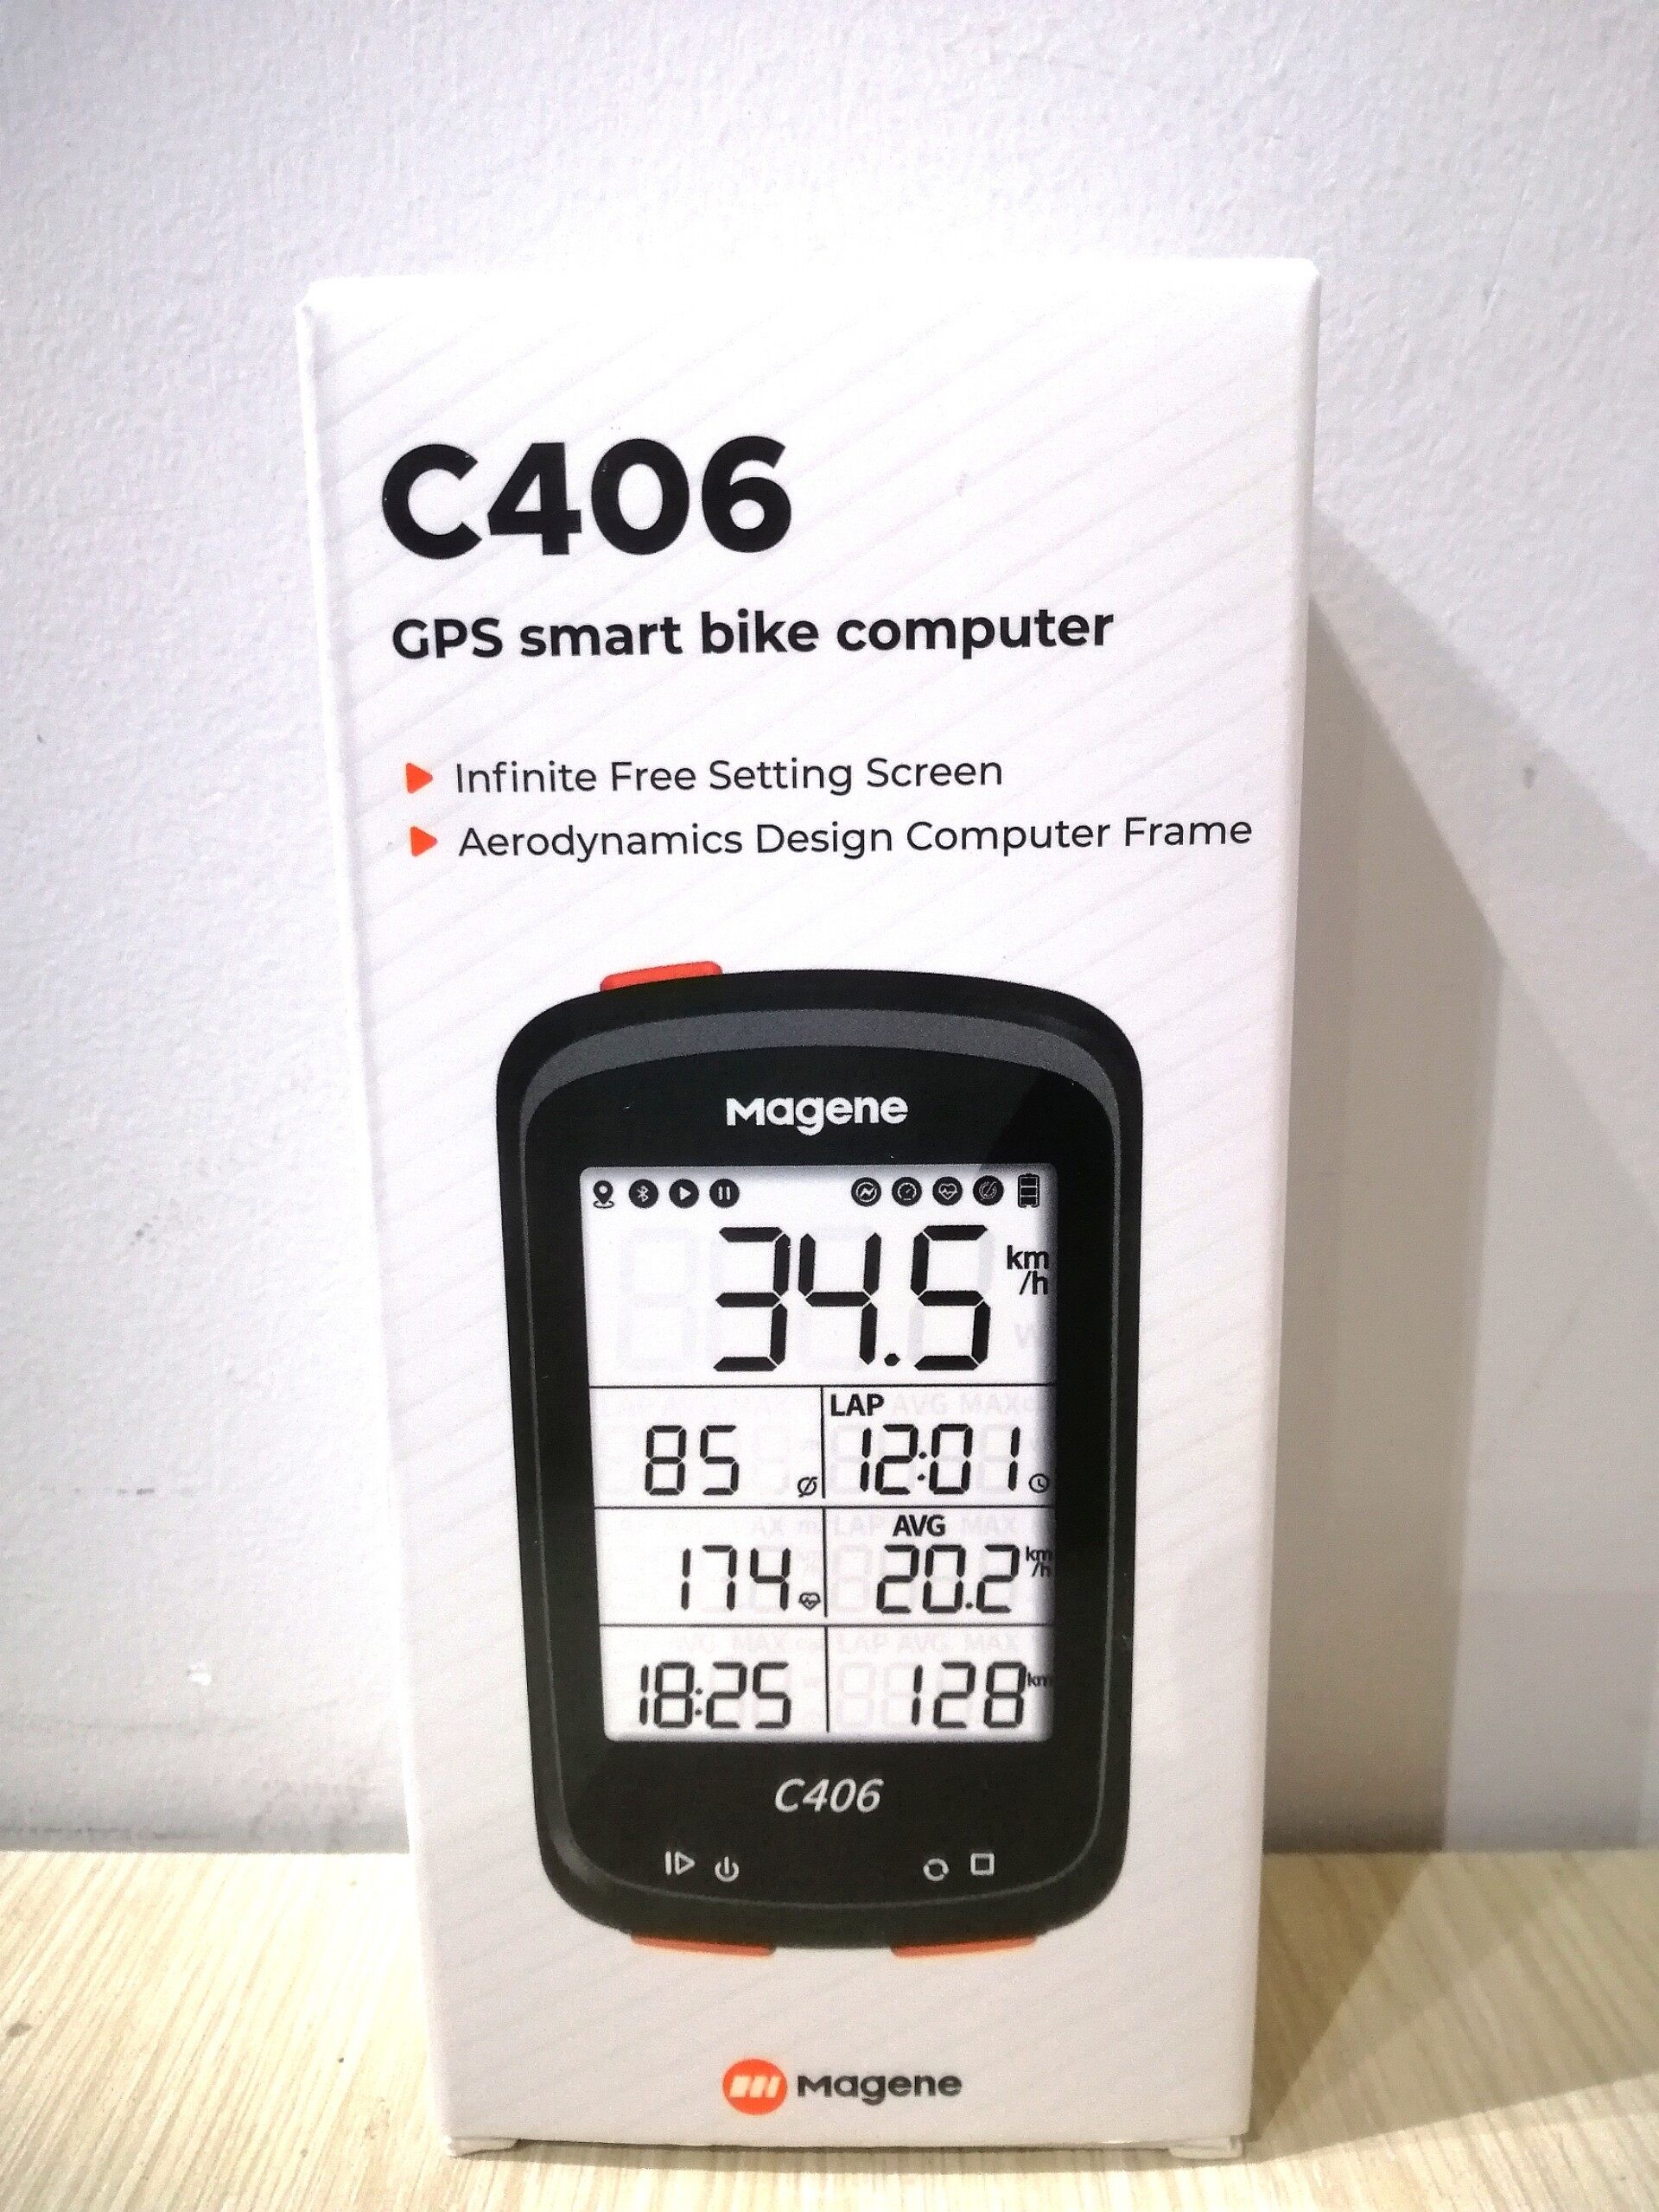 Đồng hồ tốc độ thông minh Magene C406 dành cho xe đạp sử dụng GPS